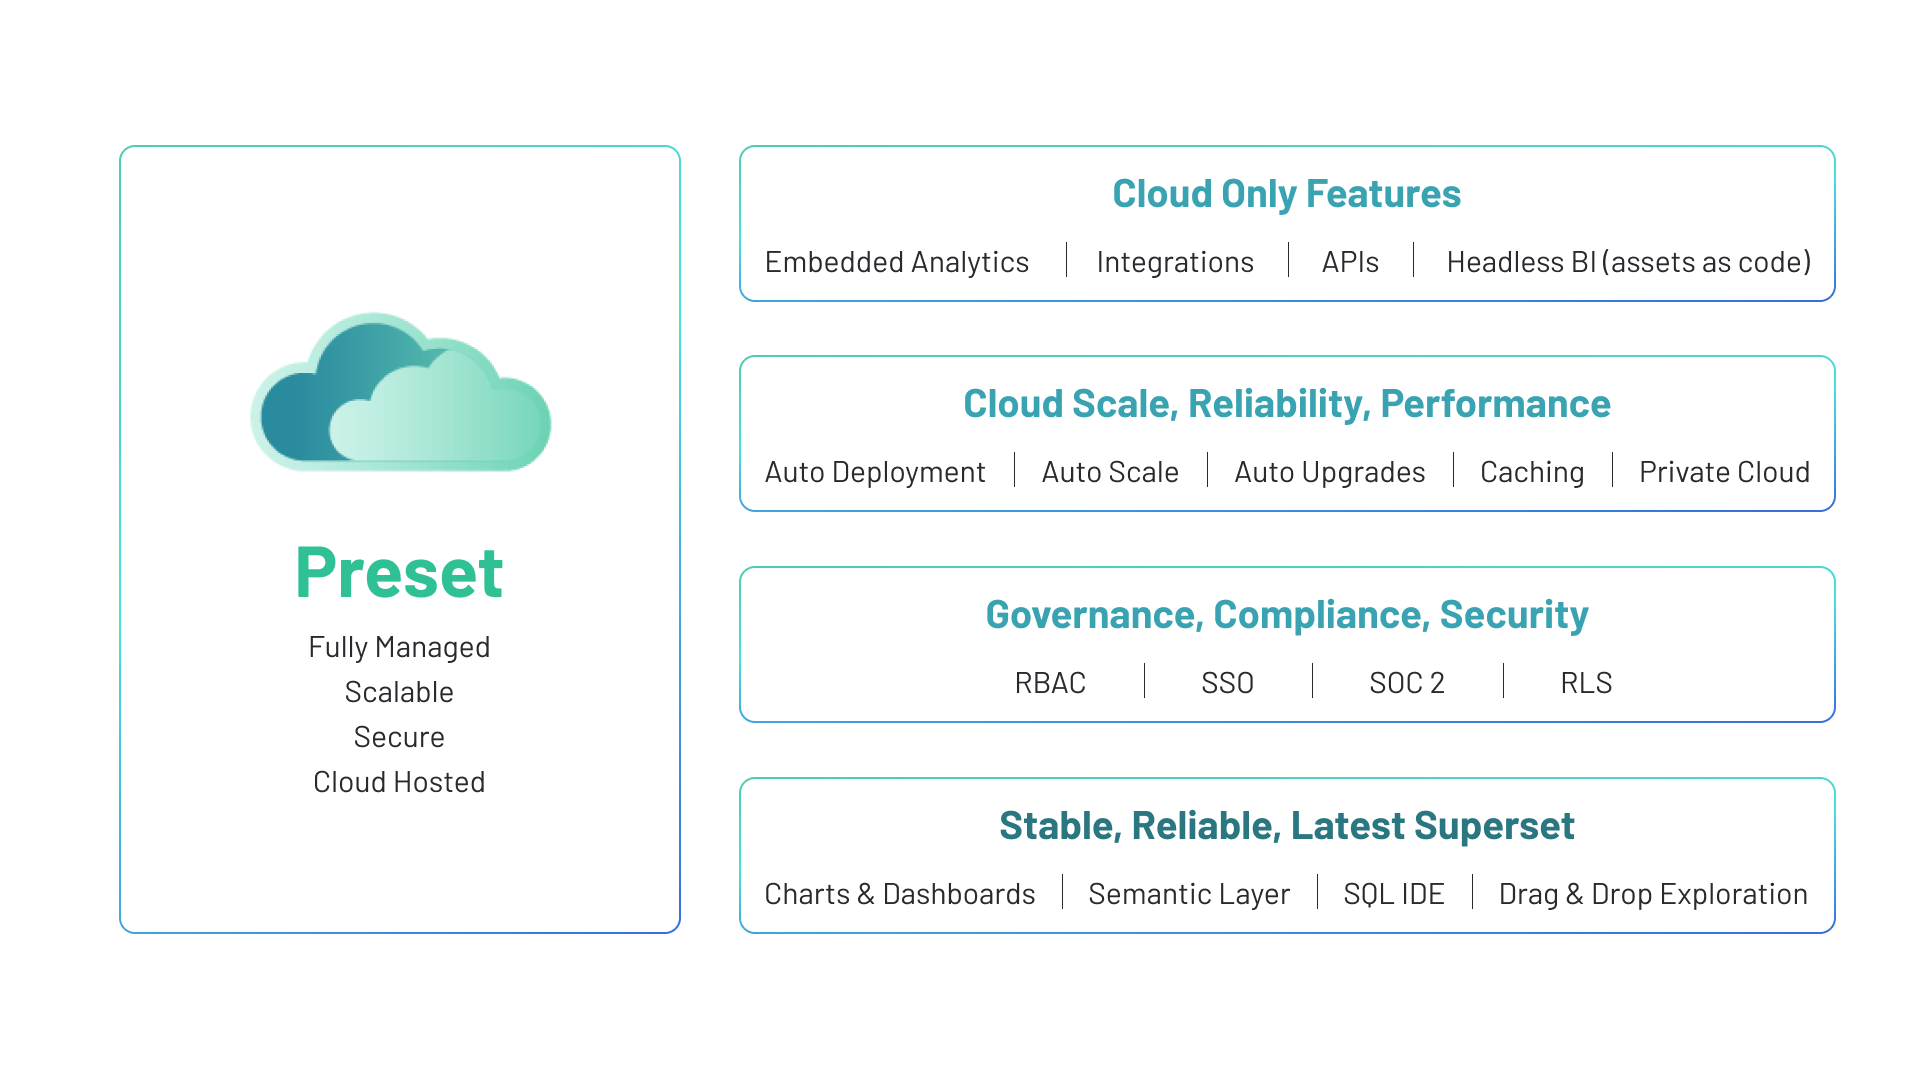 Preset Cloud SaaS offering